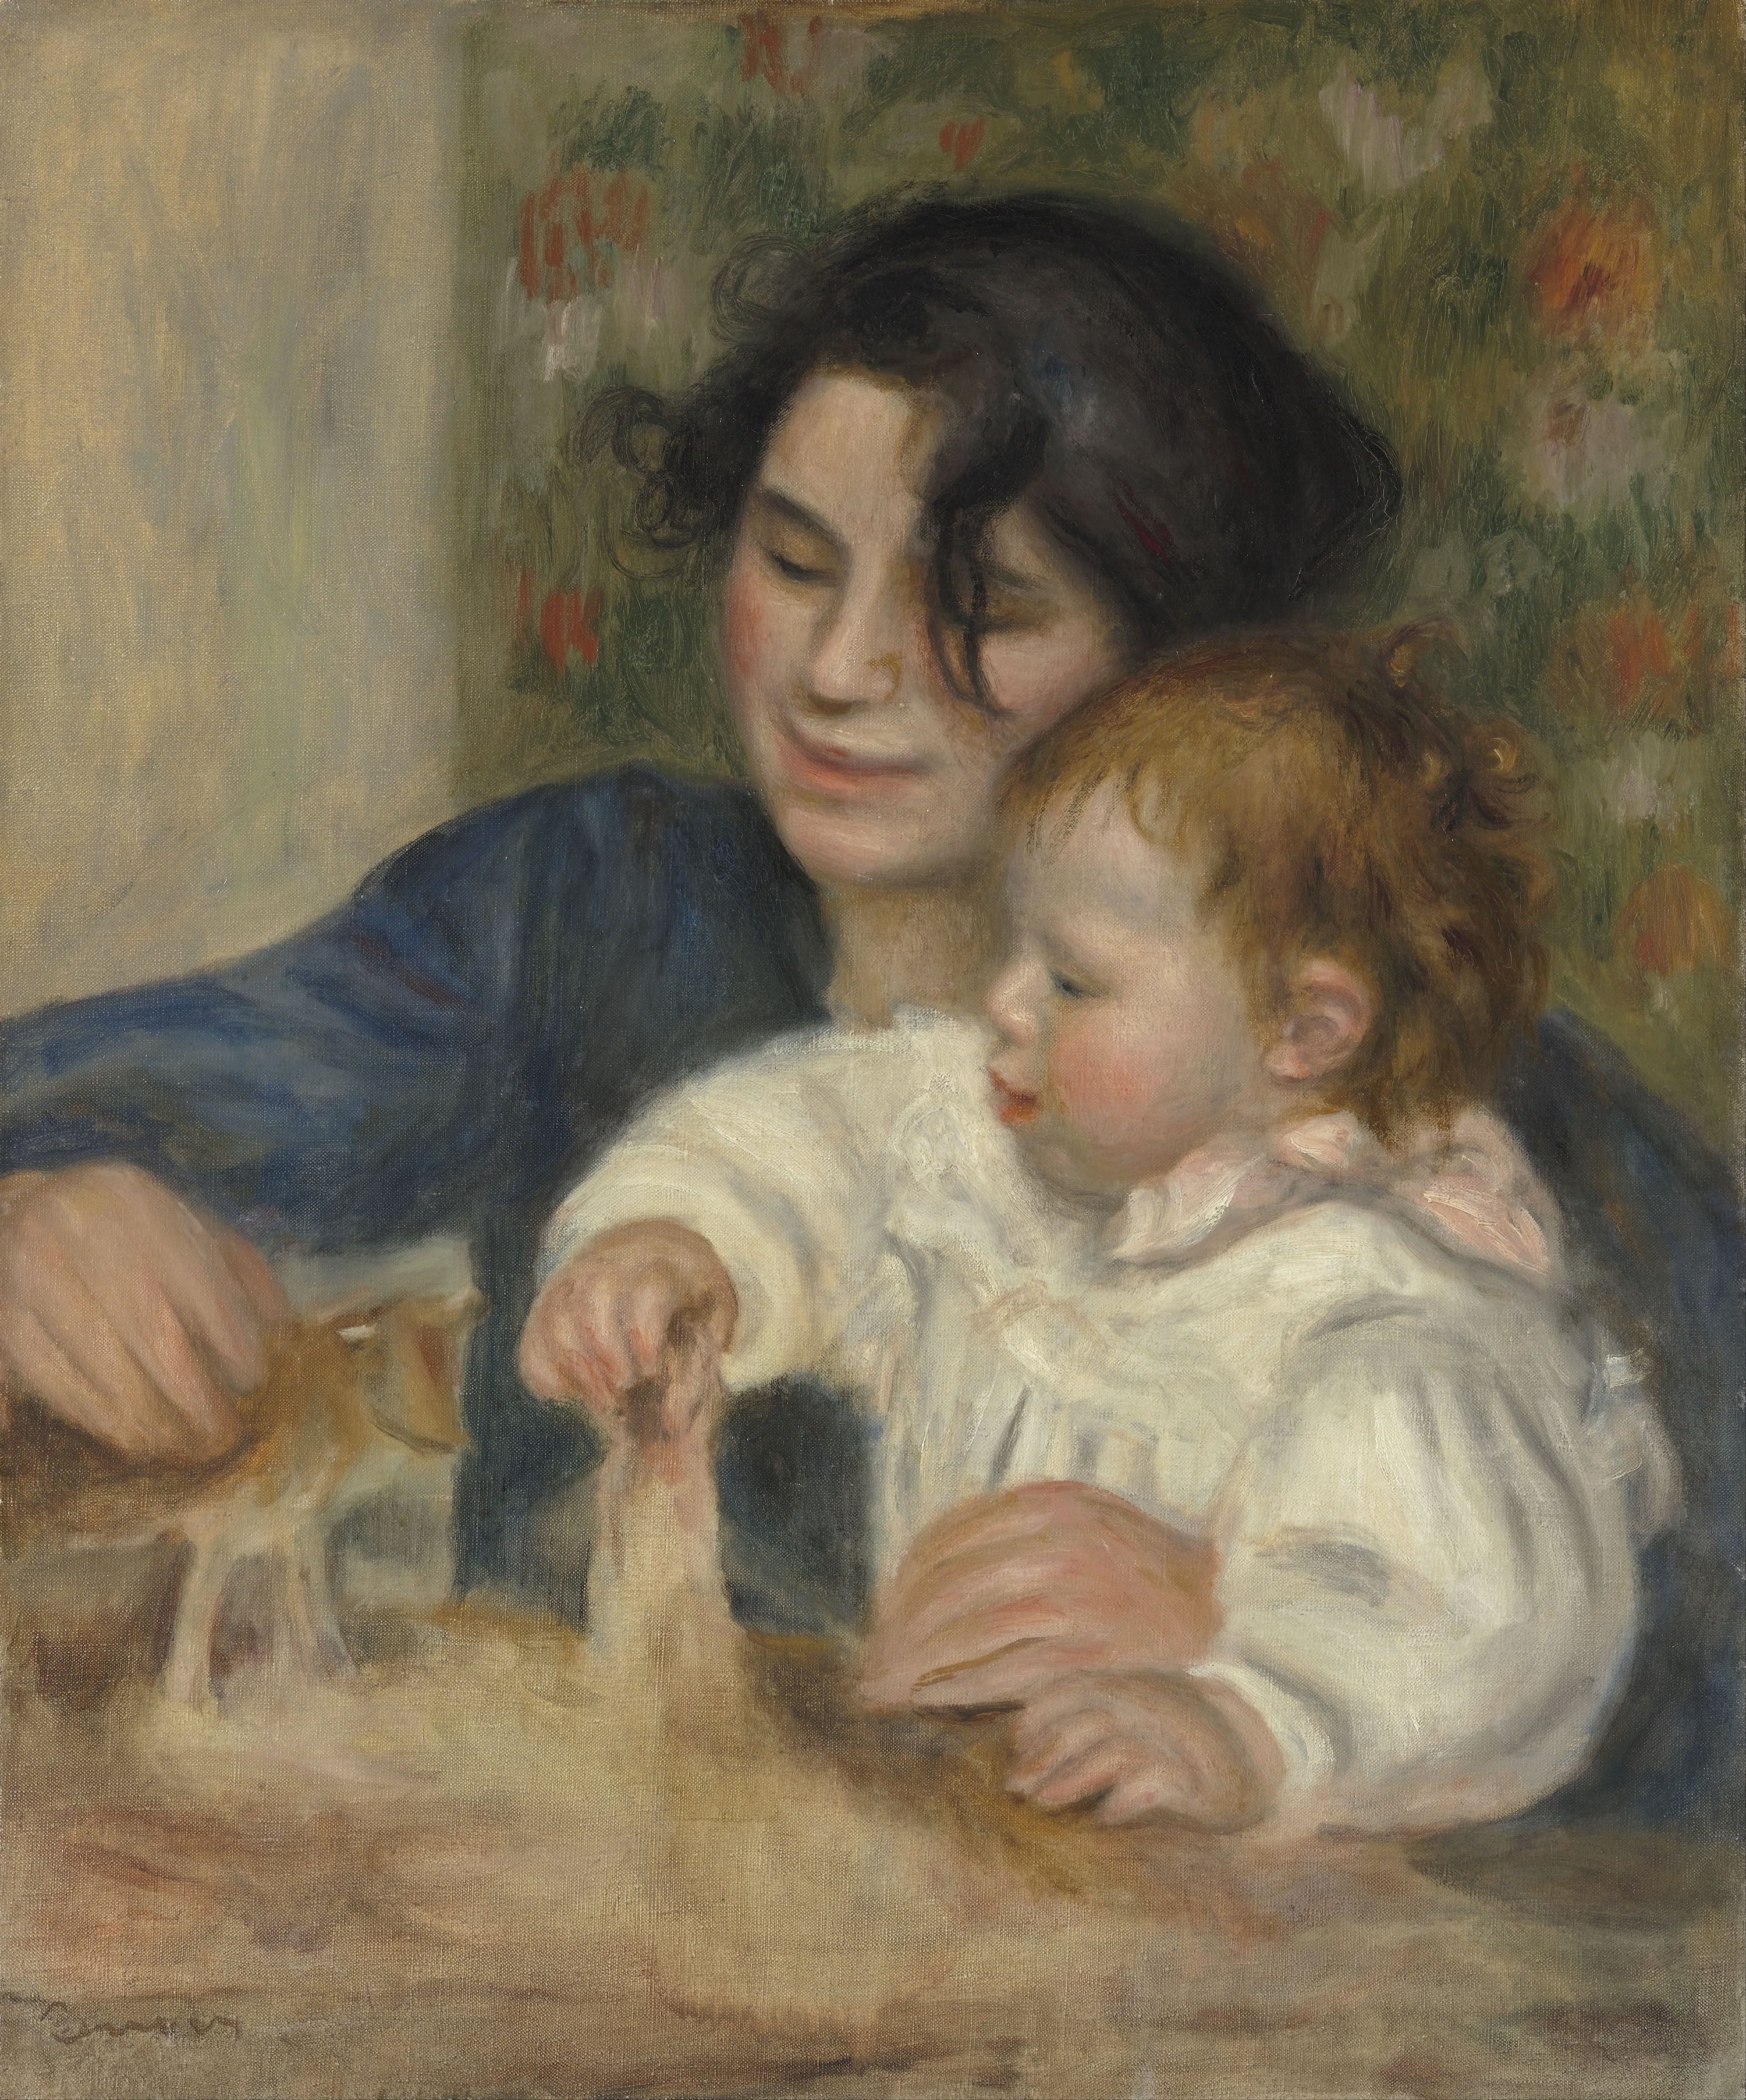 加布丽尔·雷纳和让 by 皮埃尔-奥古斯特· 雷诺阿 - 1895-1896 - 65 × 54 cm 